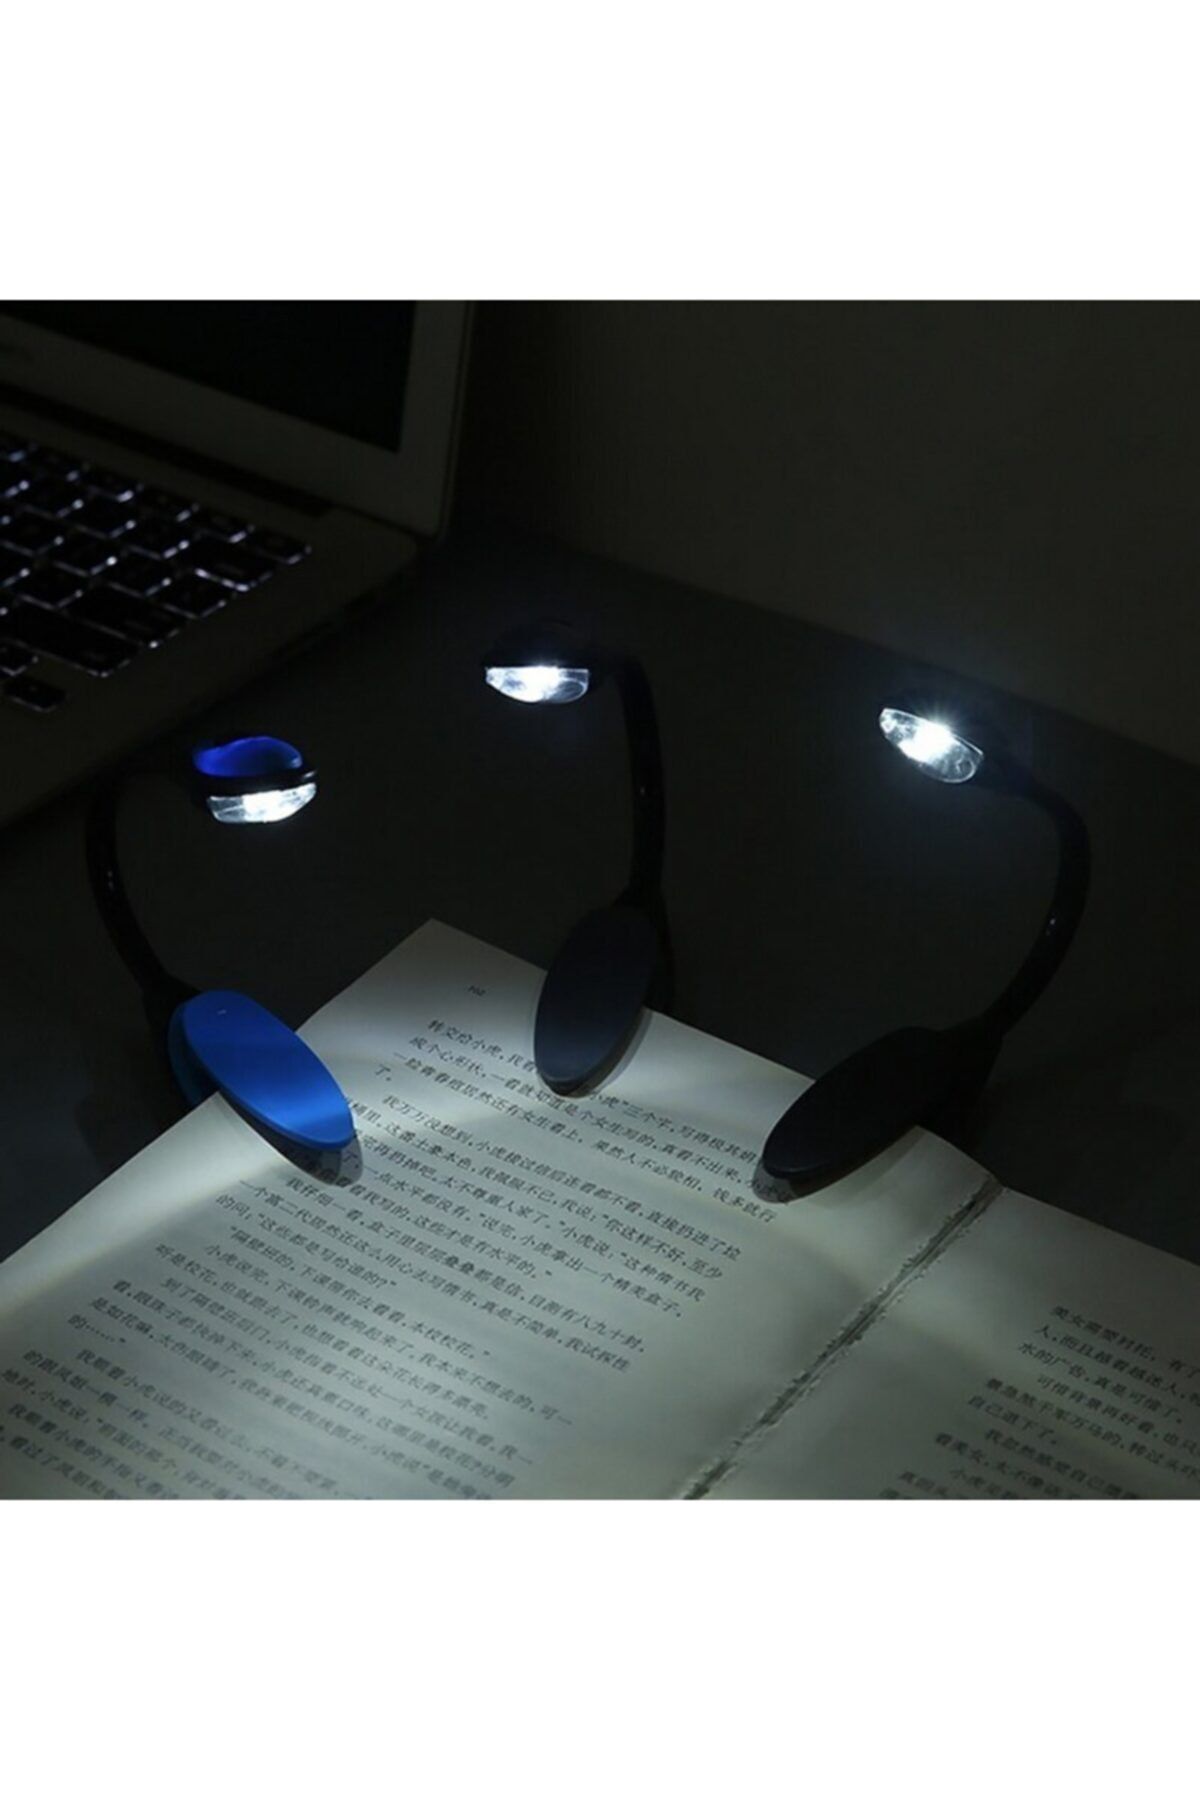 Go İthalat Kitap Okuma Işığı Led Booklight Kıskaçlı Pilli Model Led Işık